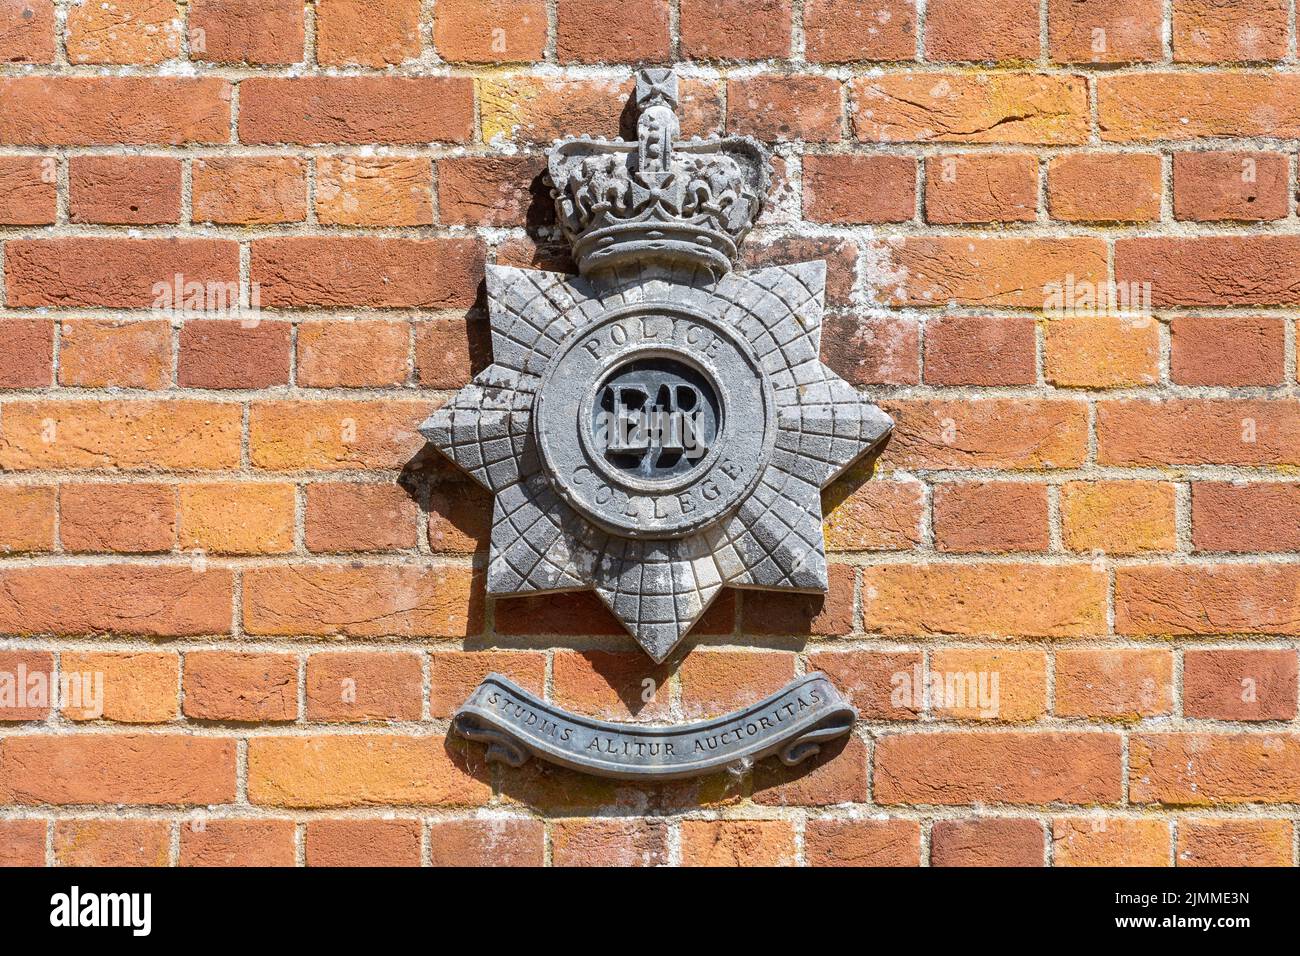 L'ancien Bramshill police Staff College, maintenant fermé, Hampshire, Angleterre, Royaume-Uni. Badge de police sur le portail à l'entrée. Banque D'Images